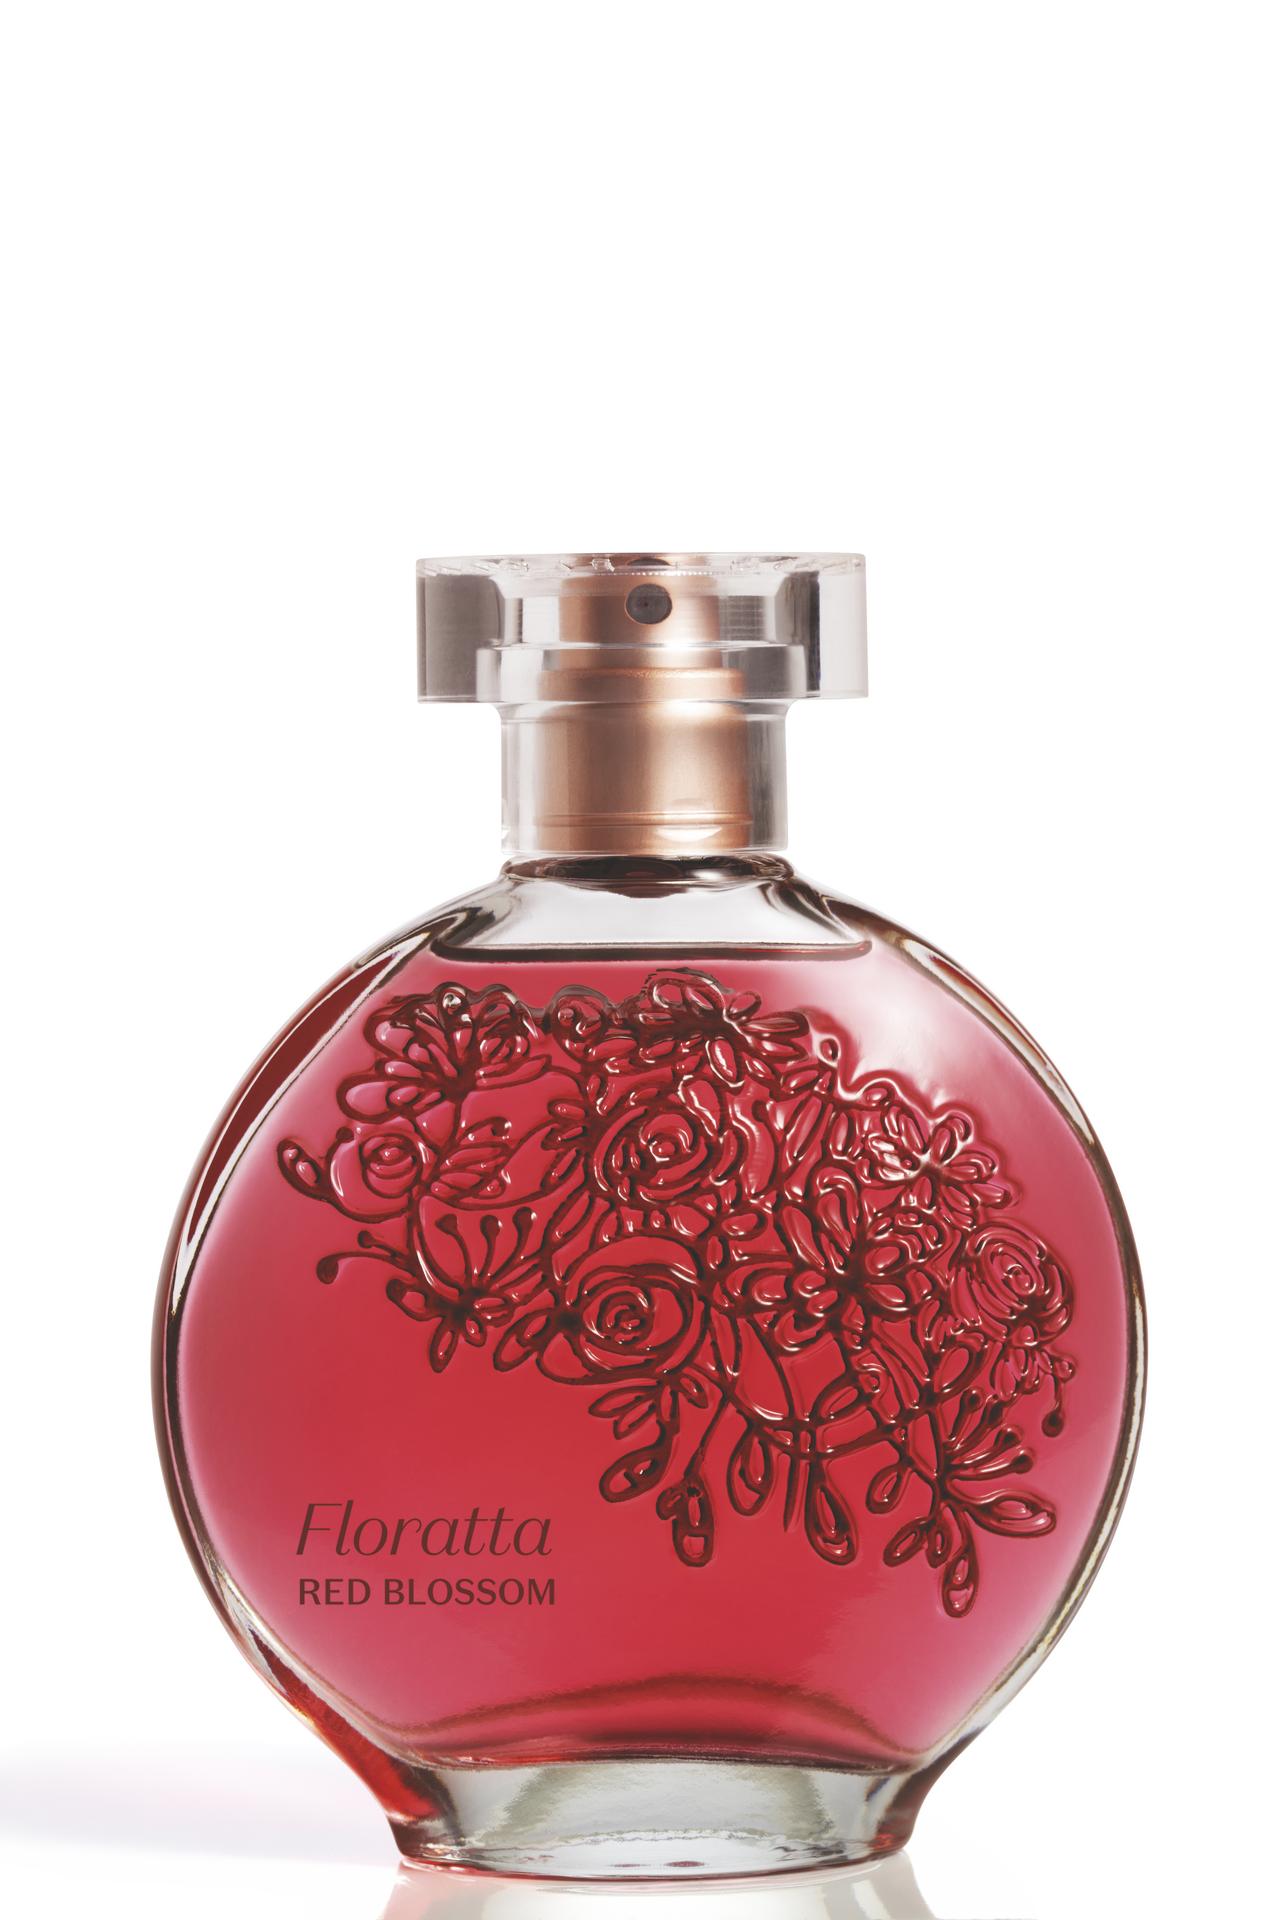 BT C03 2023 49973 FLORATTA DES COL RED BLOSSOM Frontal CMYK.0001.preview 1 - Floratta Red, clássico da perfumaria do Boticário, ganha versão mais moderna e sensual com Floratta Red Blossom